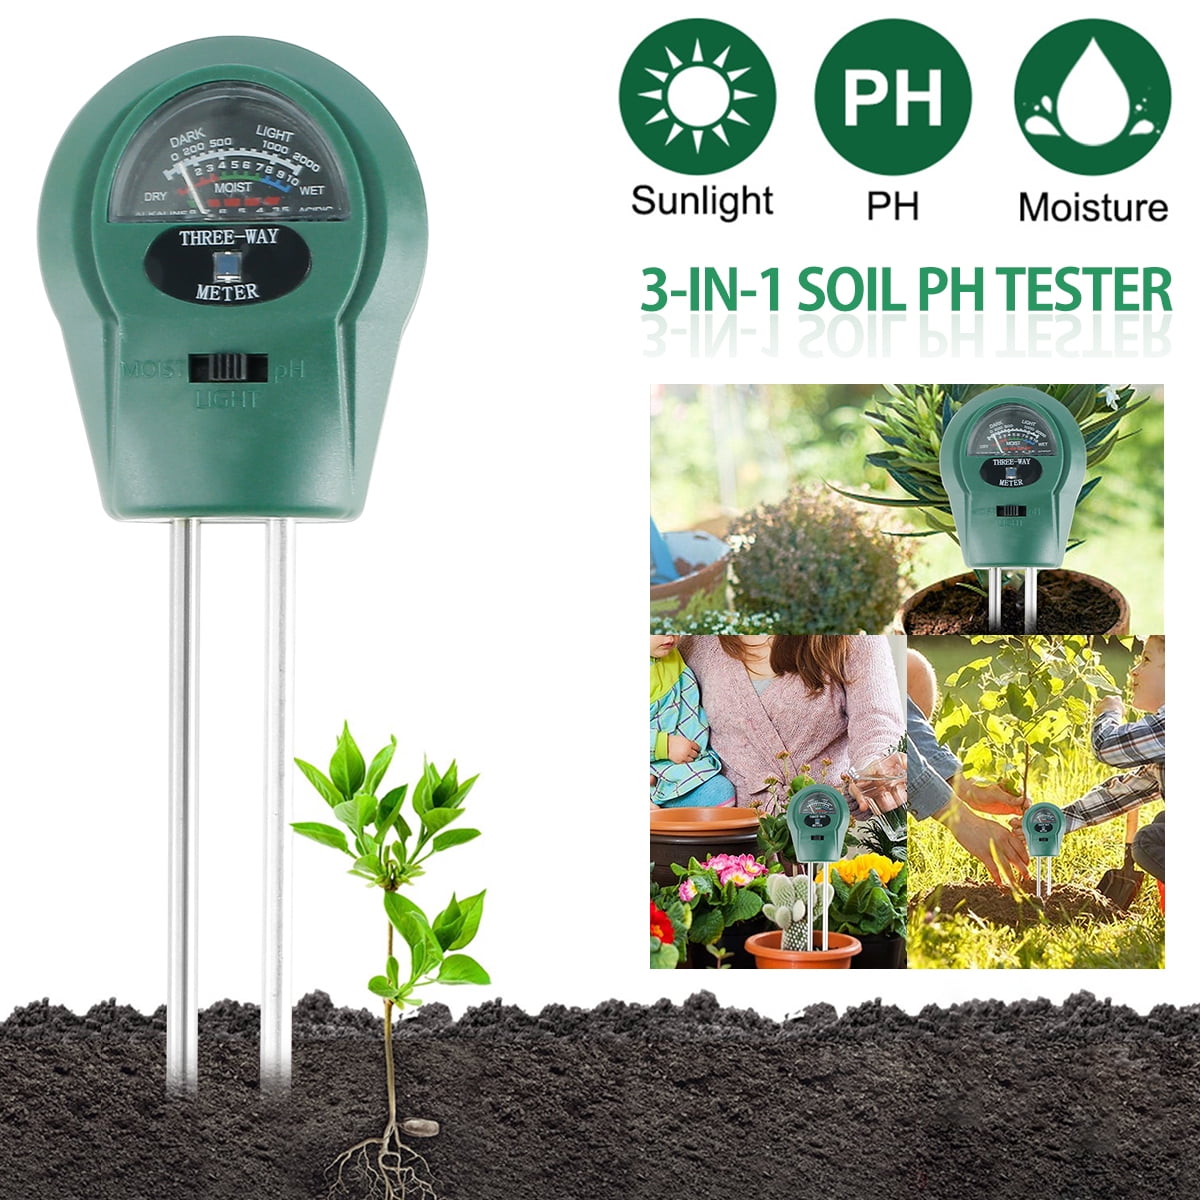 3-in-1 Soil Test Kits Moisture/Light/pH Meter for Garden Farm Lawn Planting Hygrometer Moisture Sensor Indoor/Outdoor Digital Plant Thermometer Soil Moisture Meter Plant Test No Battery Required 